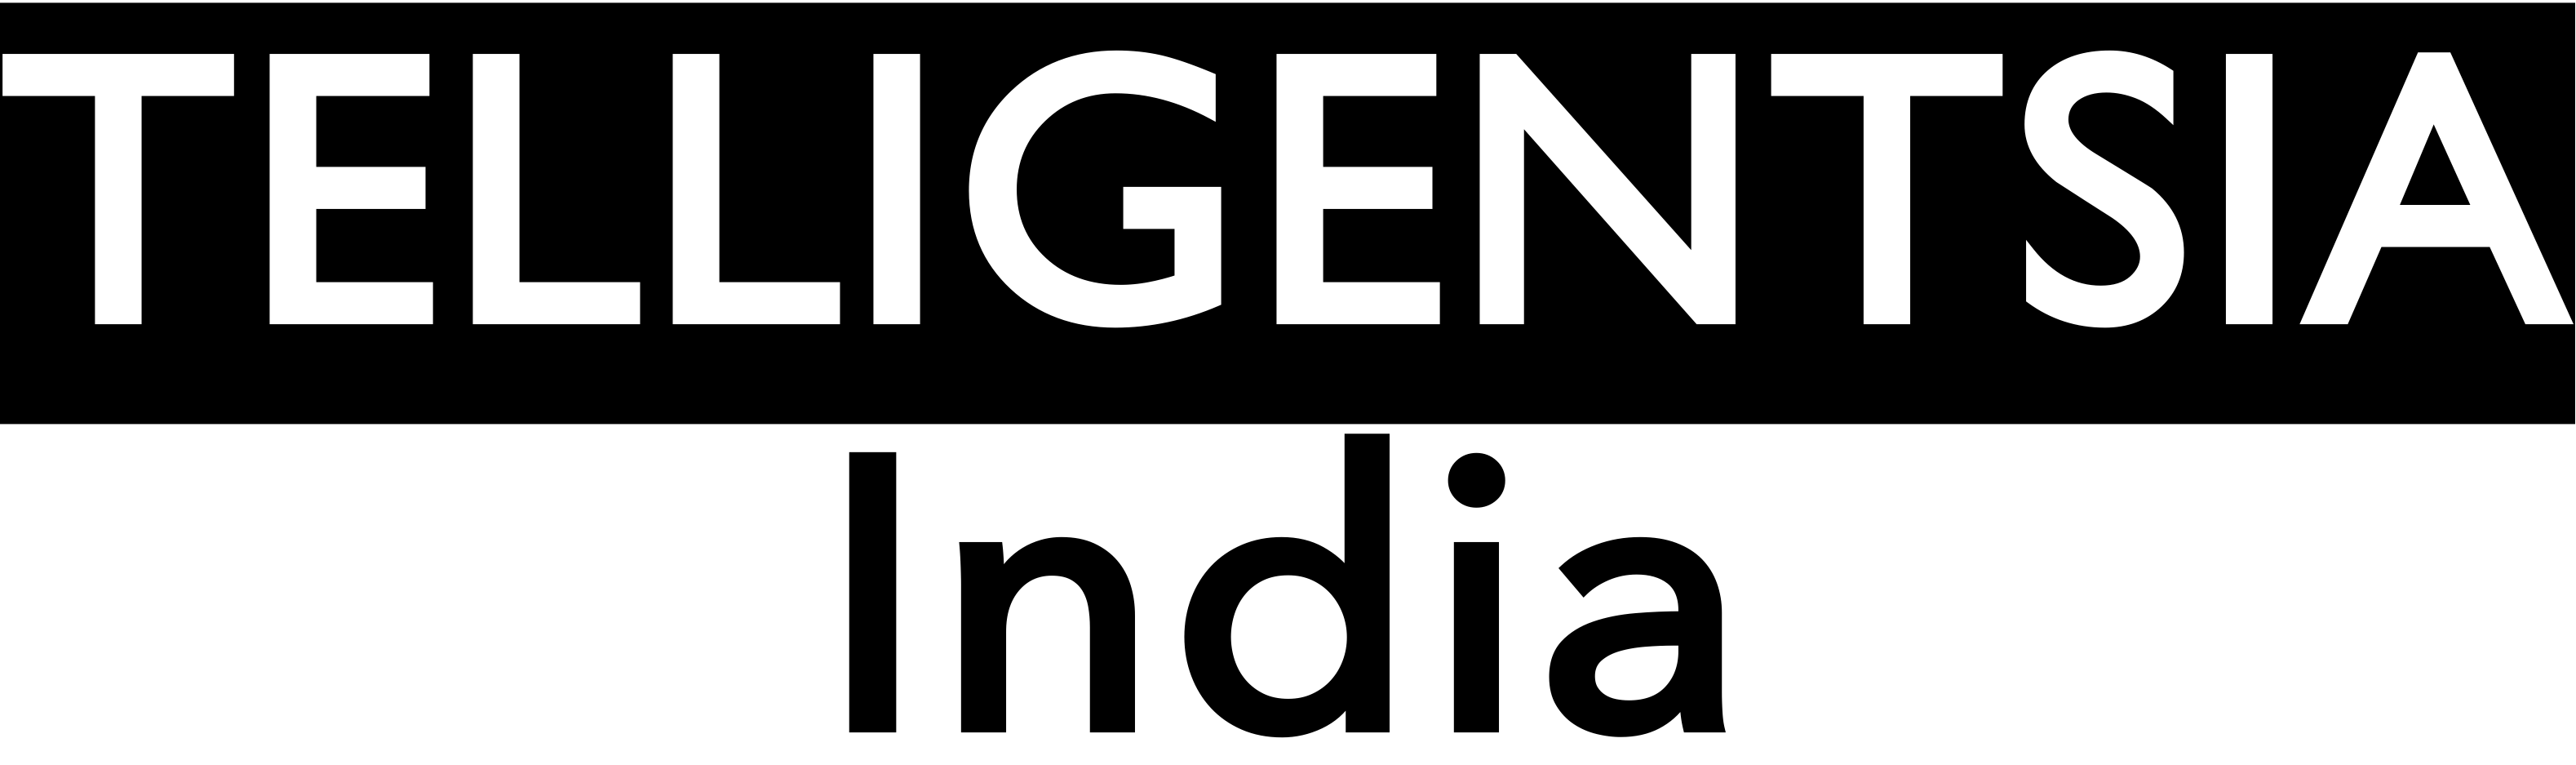 Telligentsia India